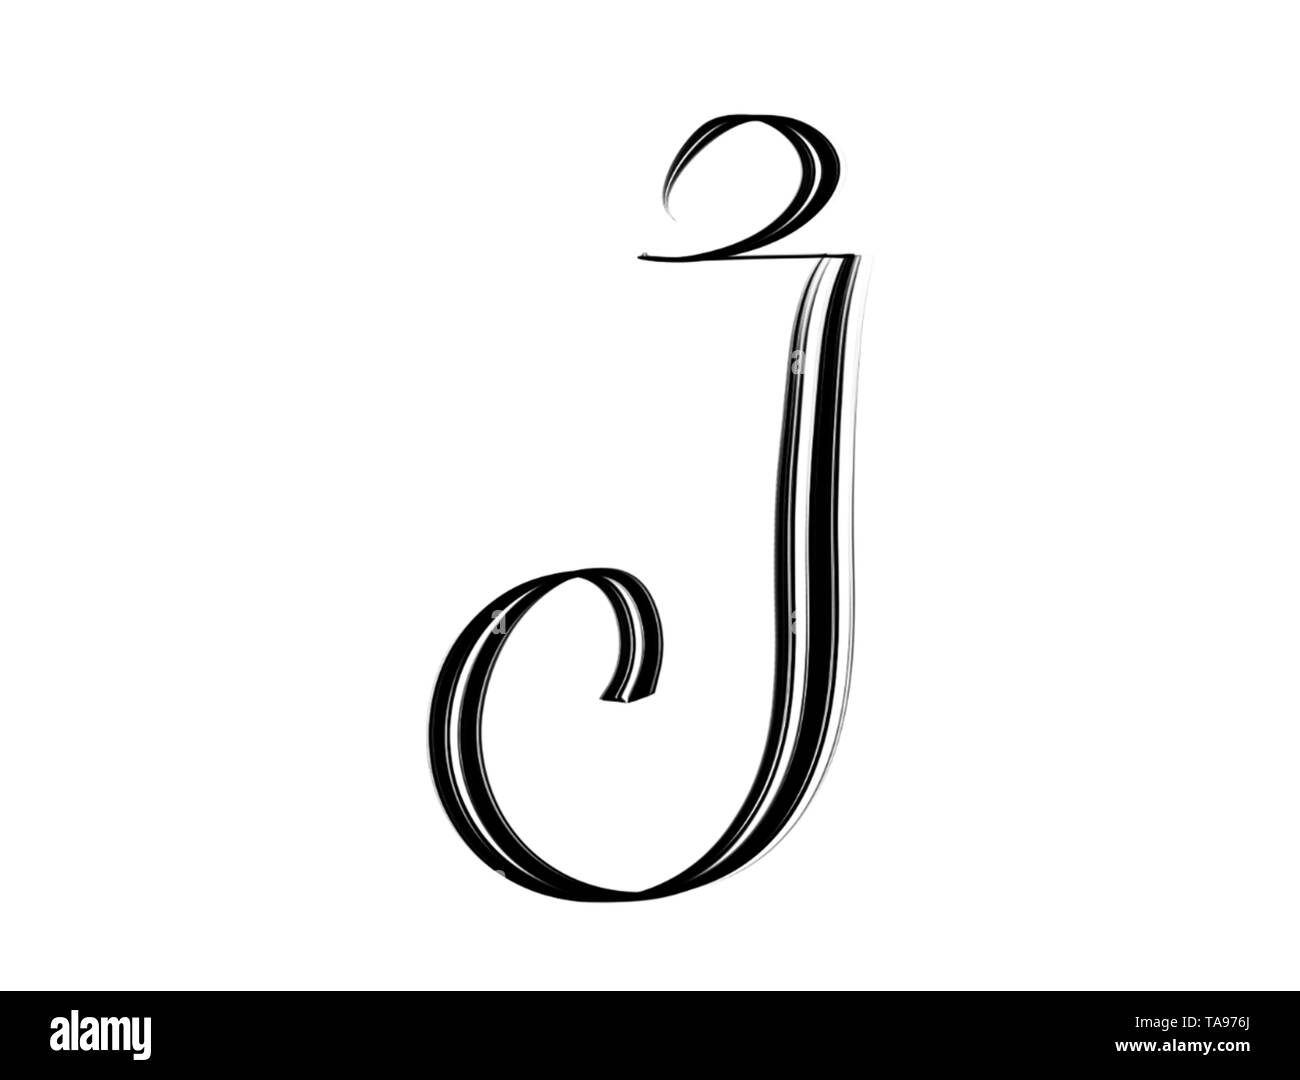 Elegant letter J hand lettered in black on white background Stock Photo